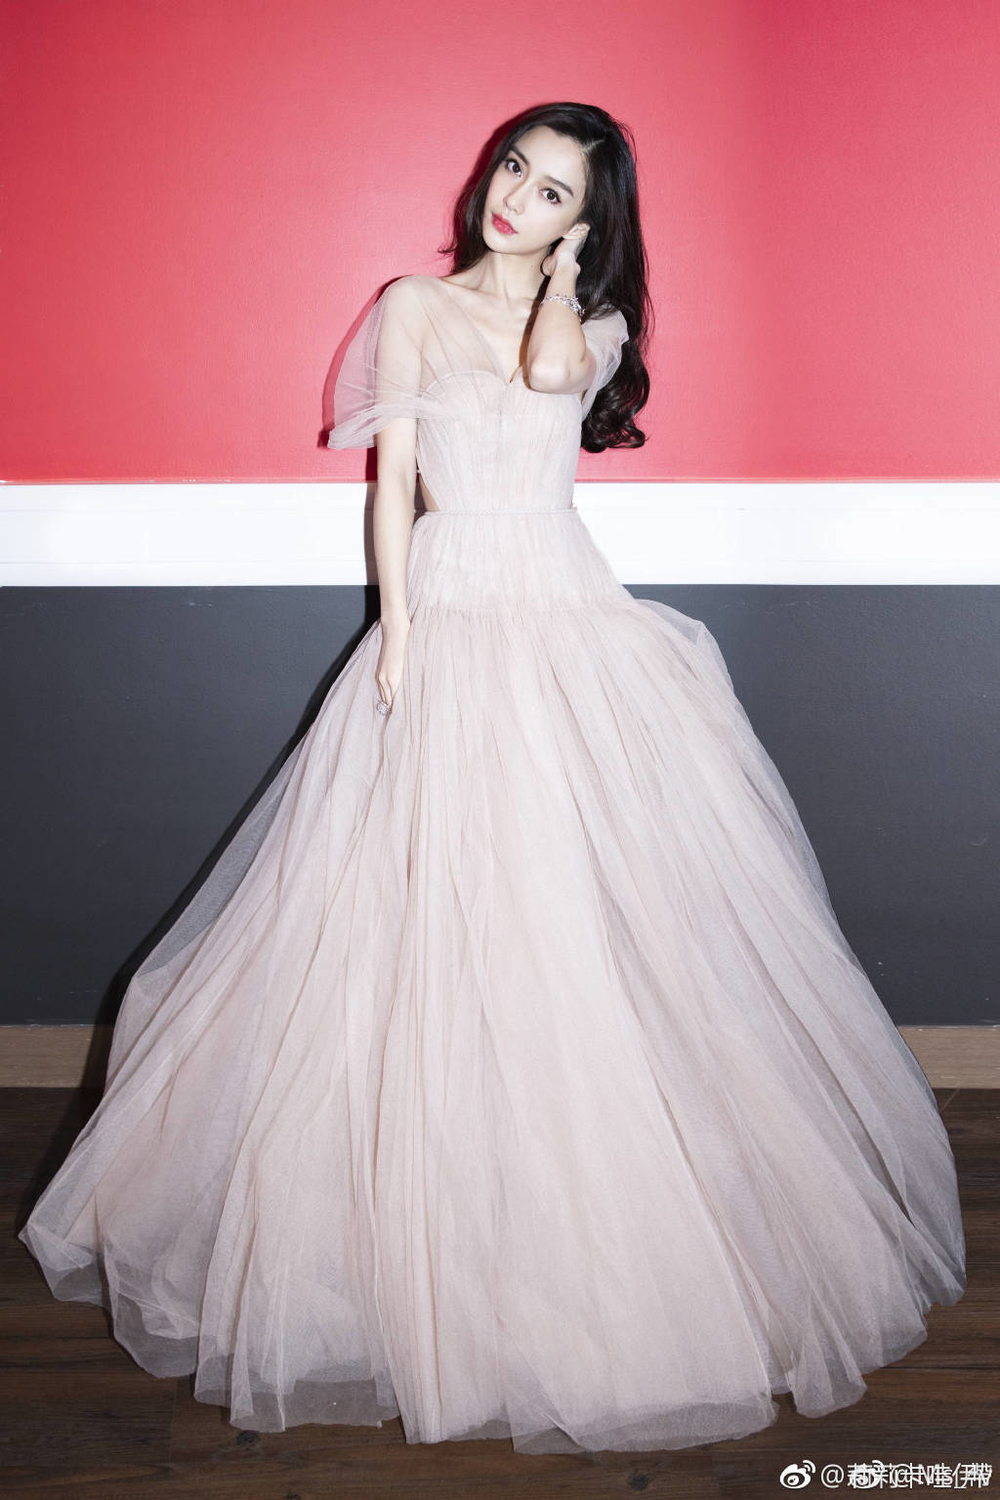 AngelaBaby lộng lẫy như công chúa khiến dàn idol Kpop phải kiêng dè tại thảm đỏ MAMA Hồng Kông